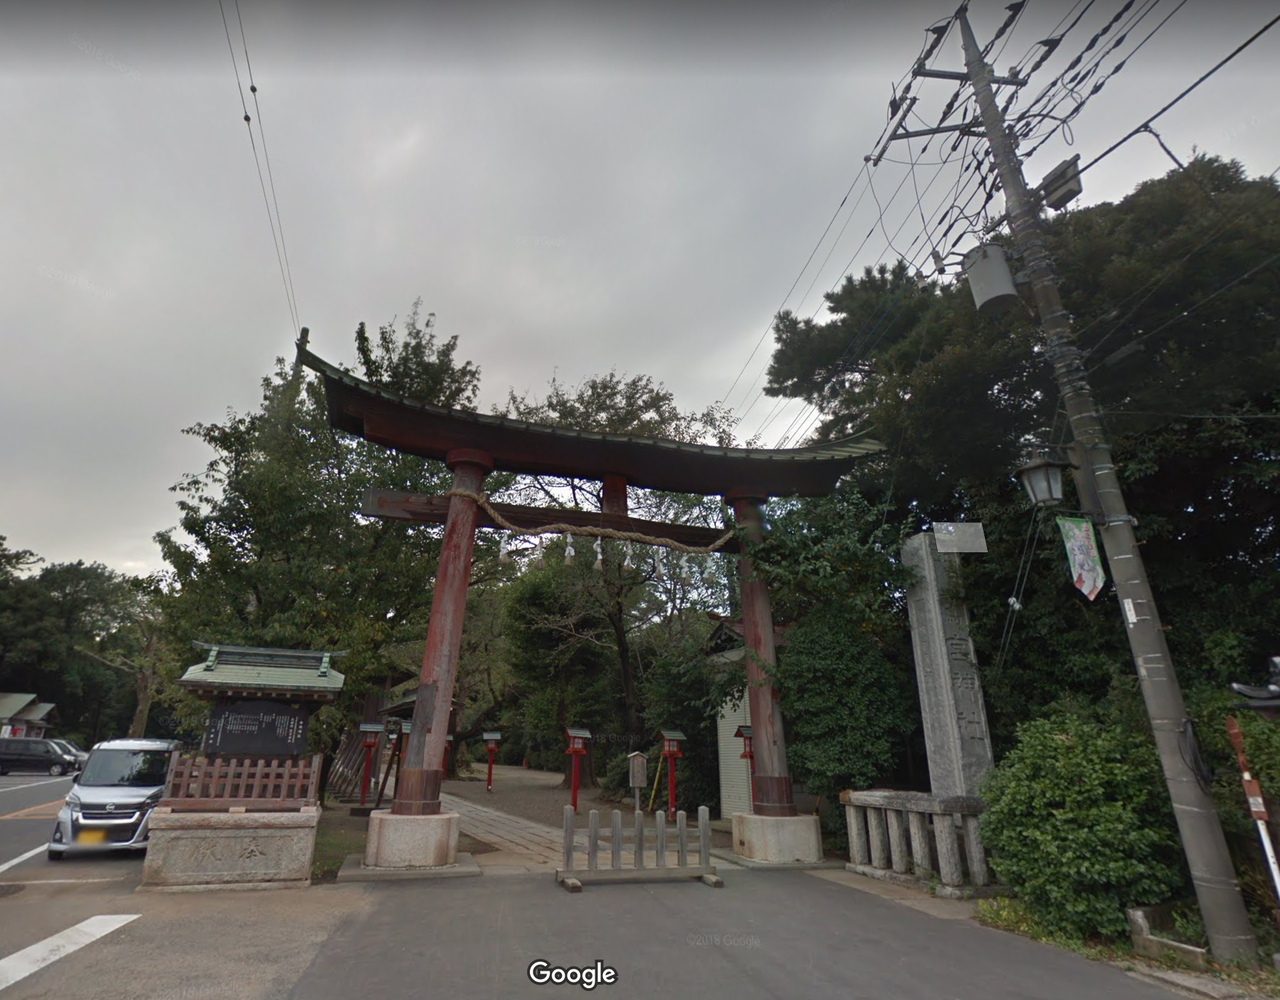 らき すた 鷲宮神社 の現在がヤバイ 鳥居が崩壊 店は閉店 秒刊sunday